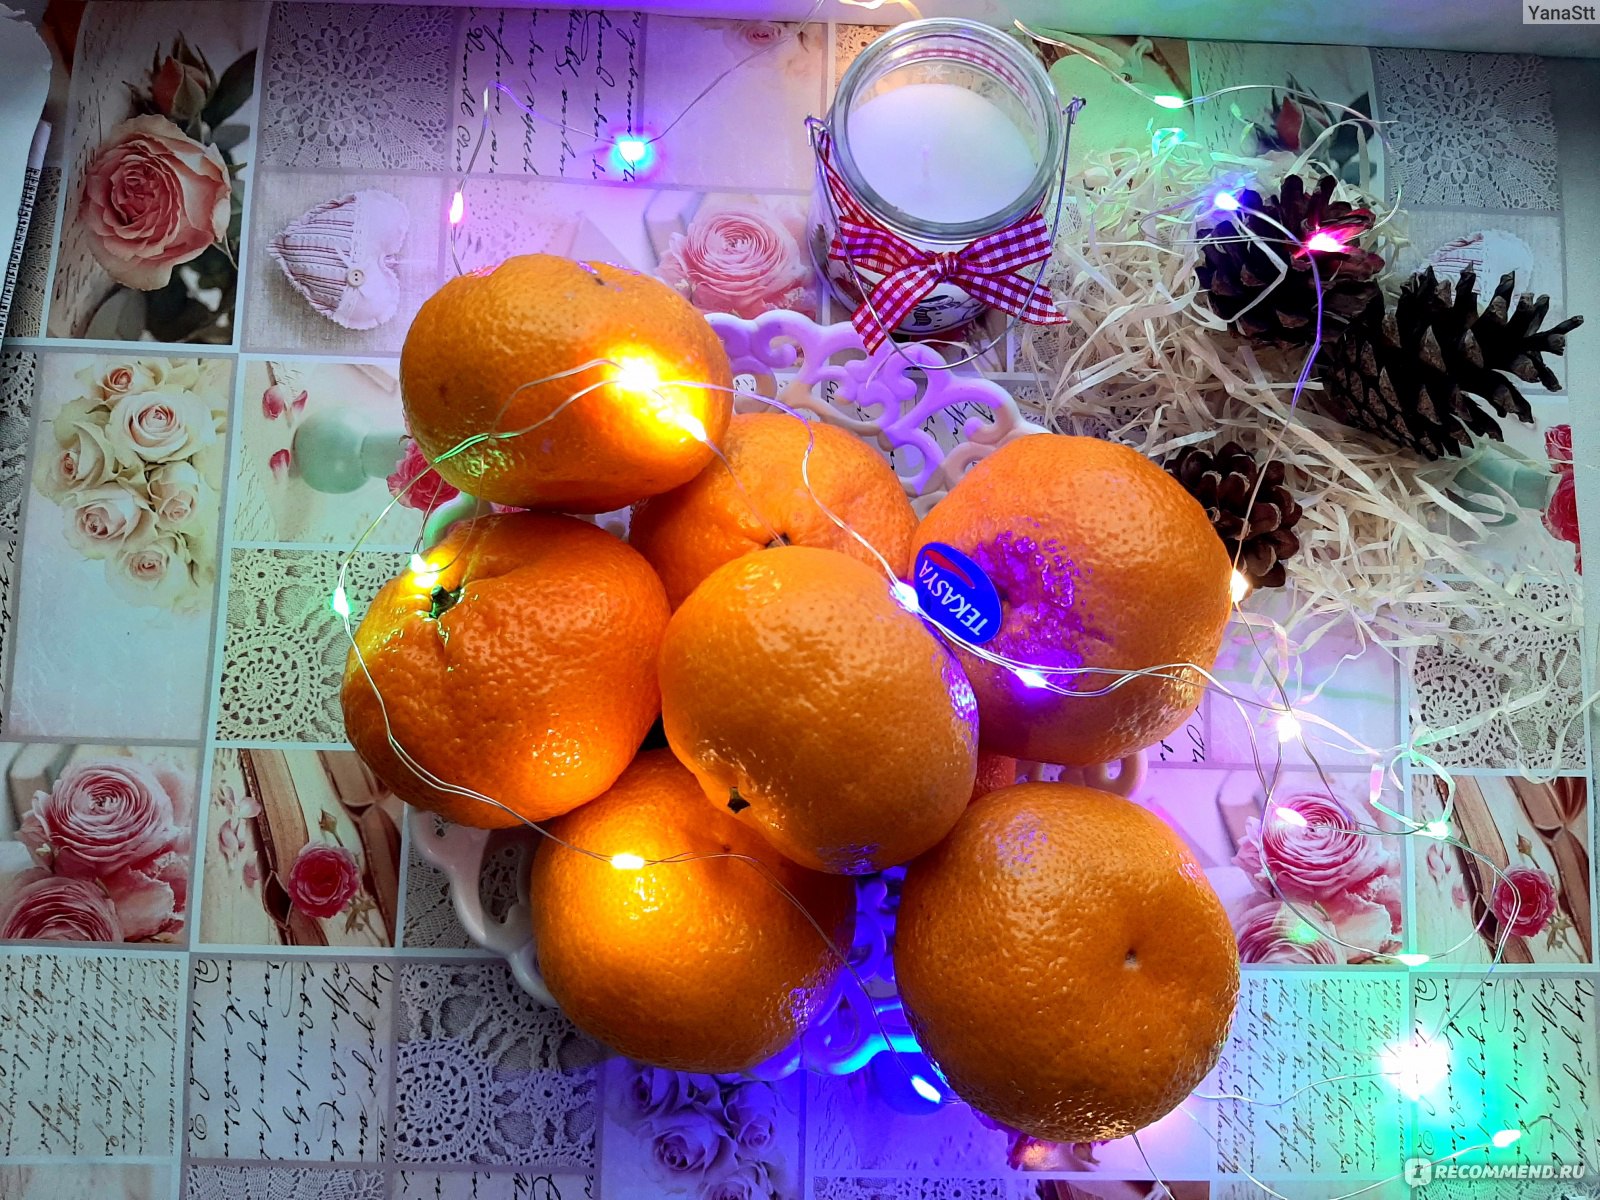 Как приготовить Джем конфитюр как желе из мандаринов и апельсинов просто рецепт пошаговый